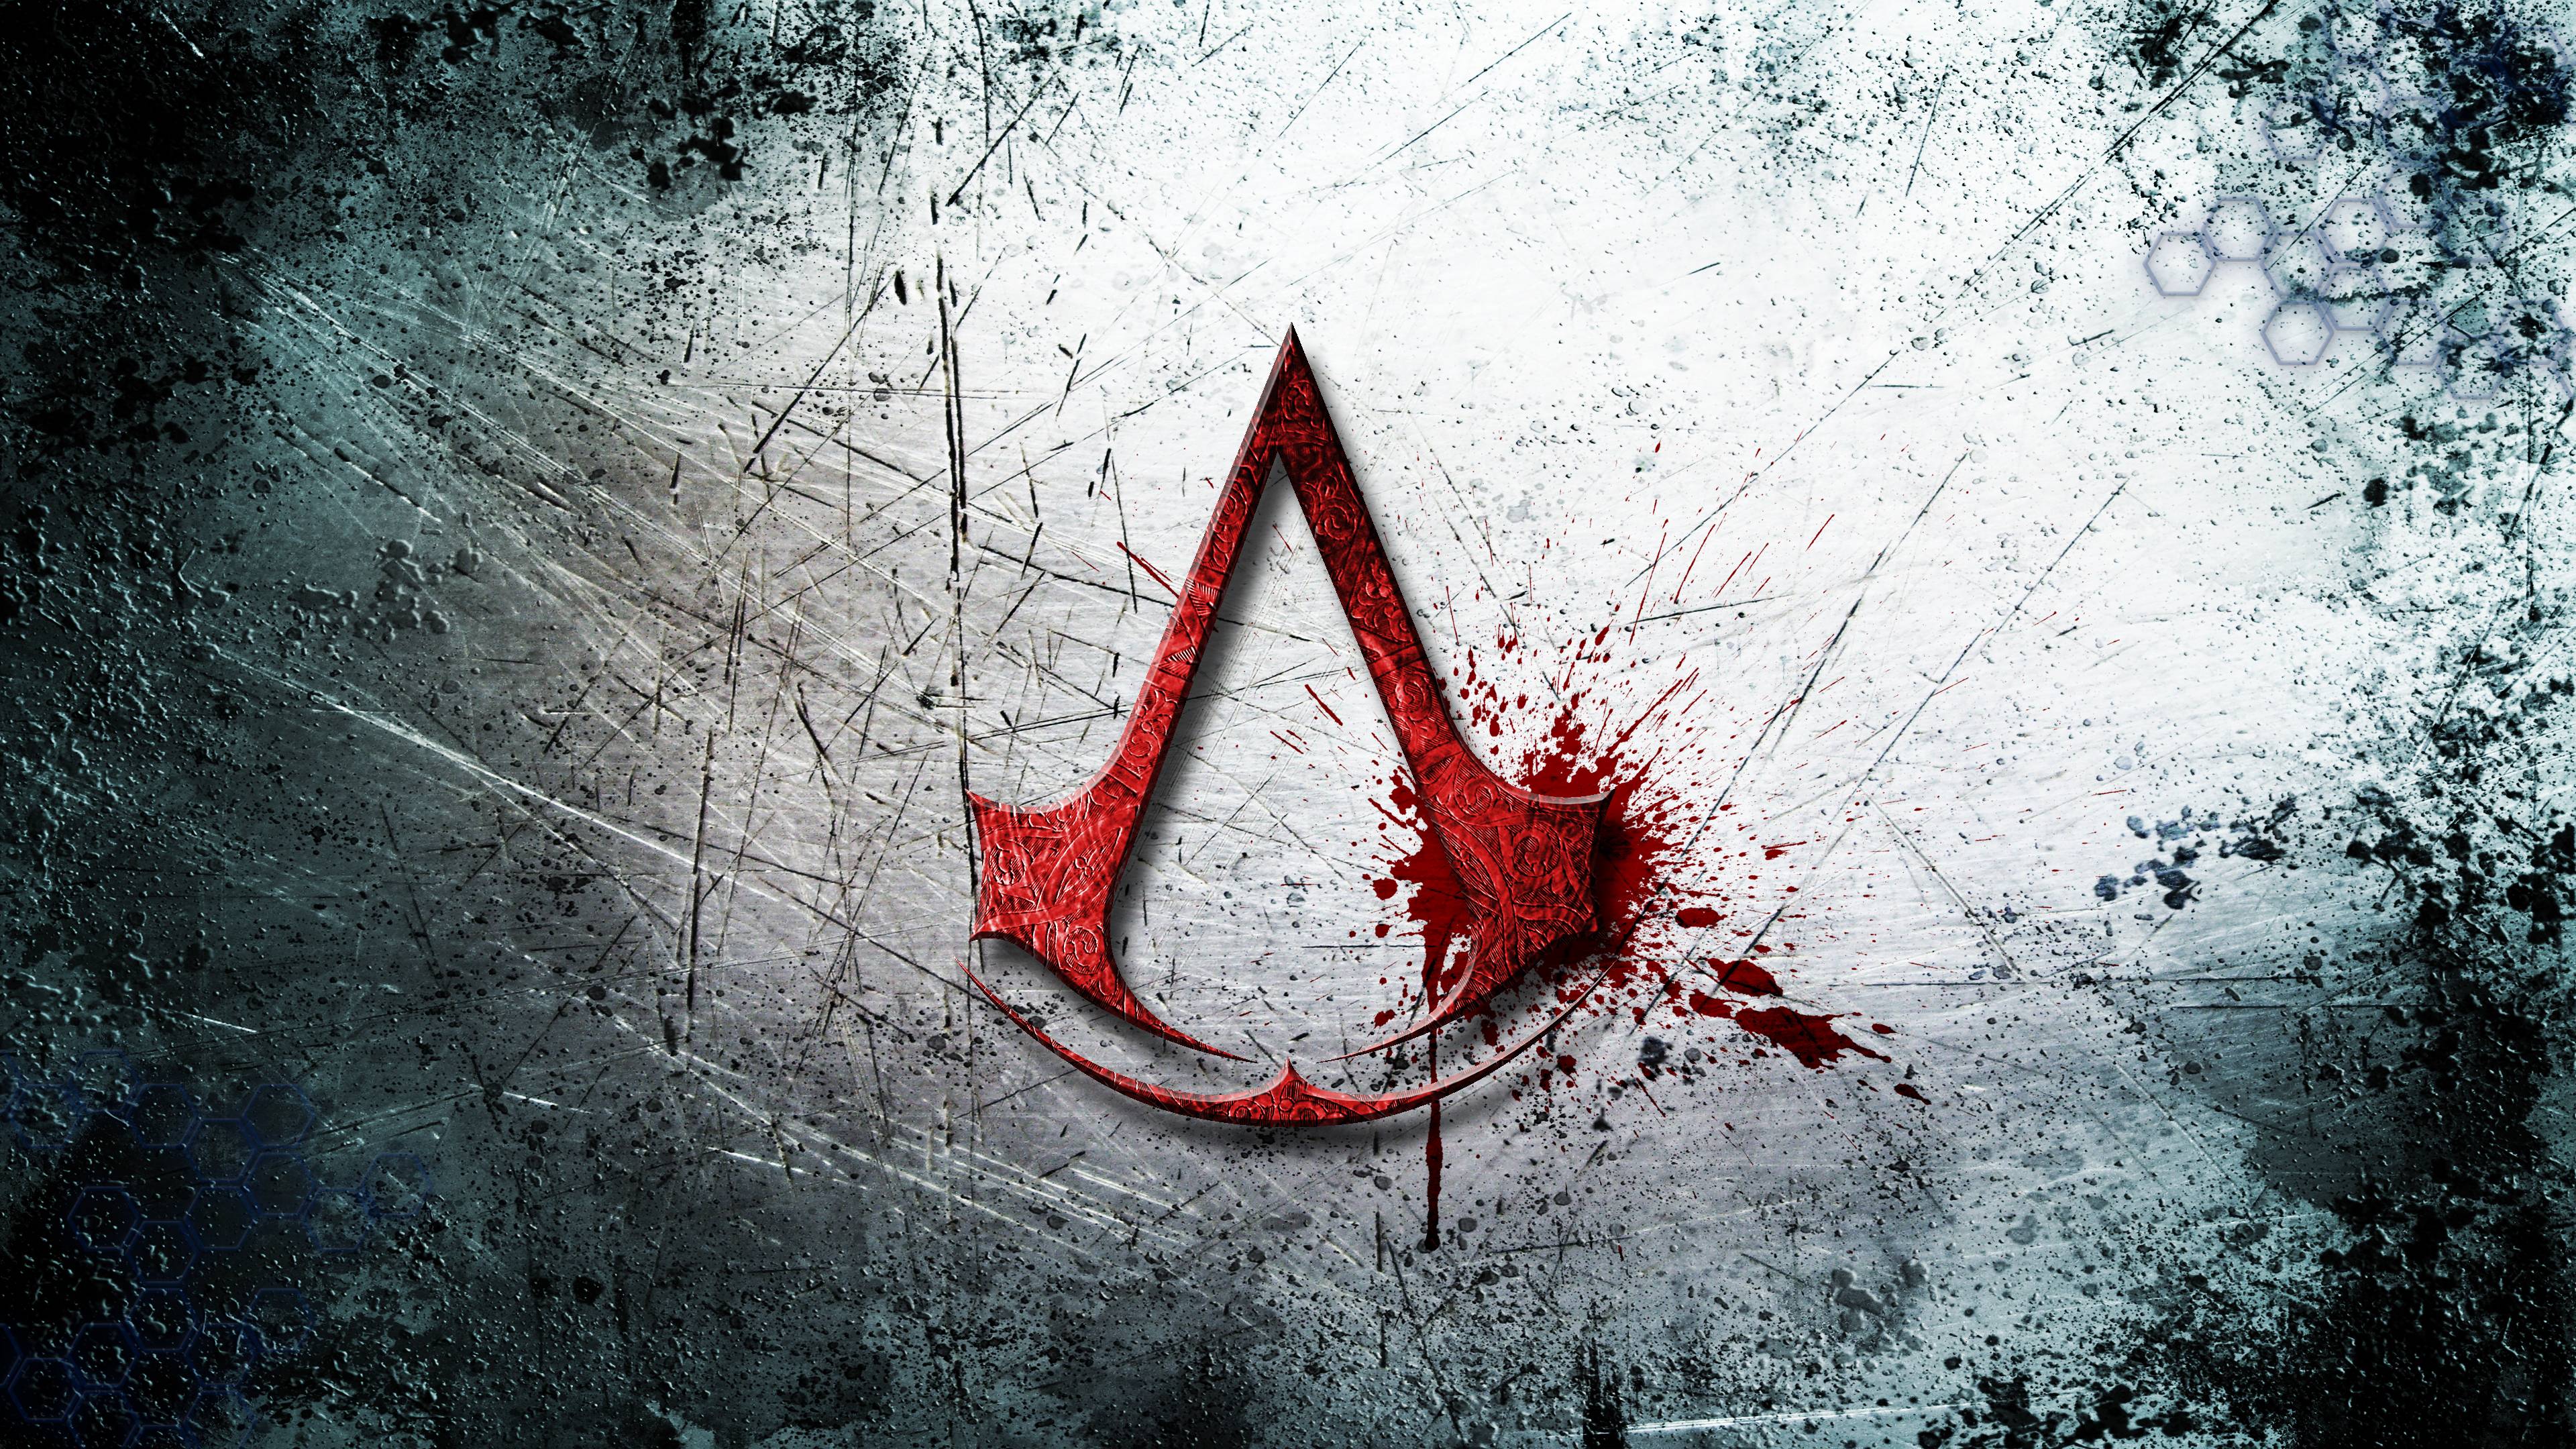 Assassins Creed HD Wallpaper | 1920x1080 | ID:56795